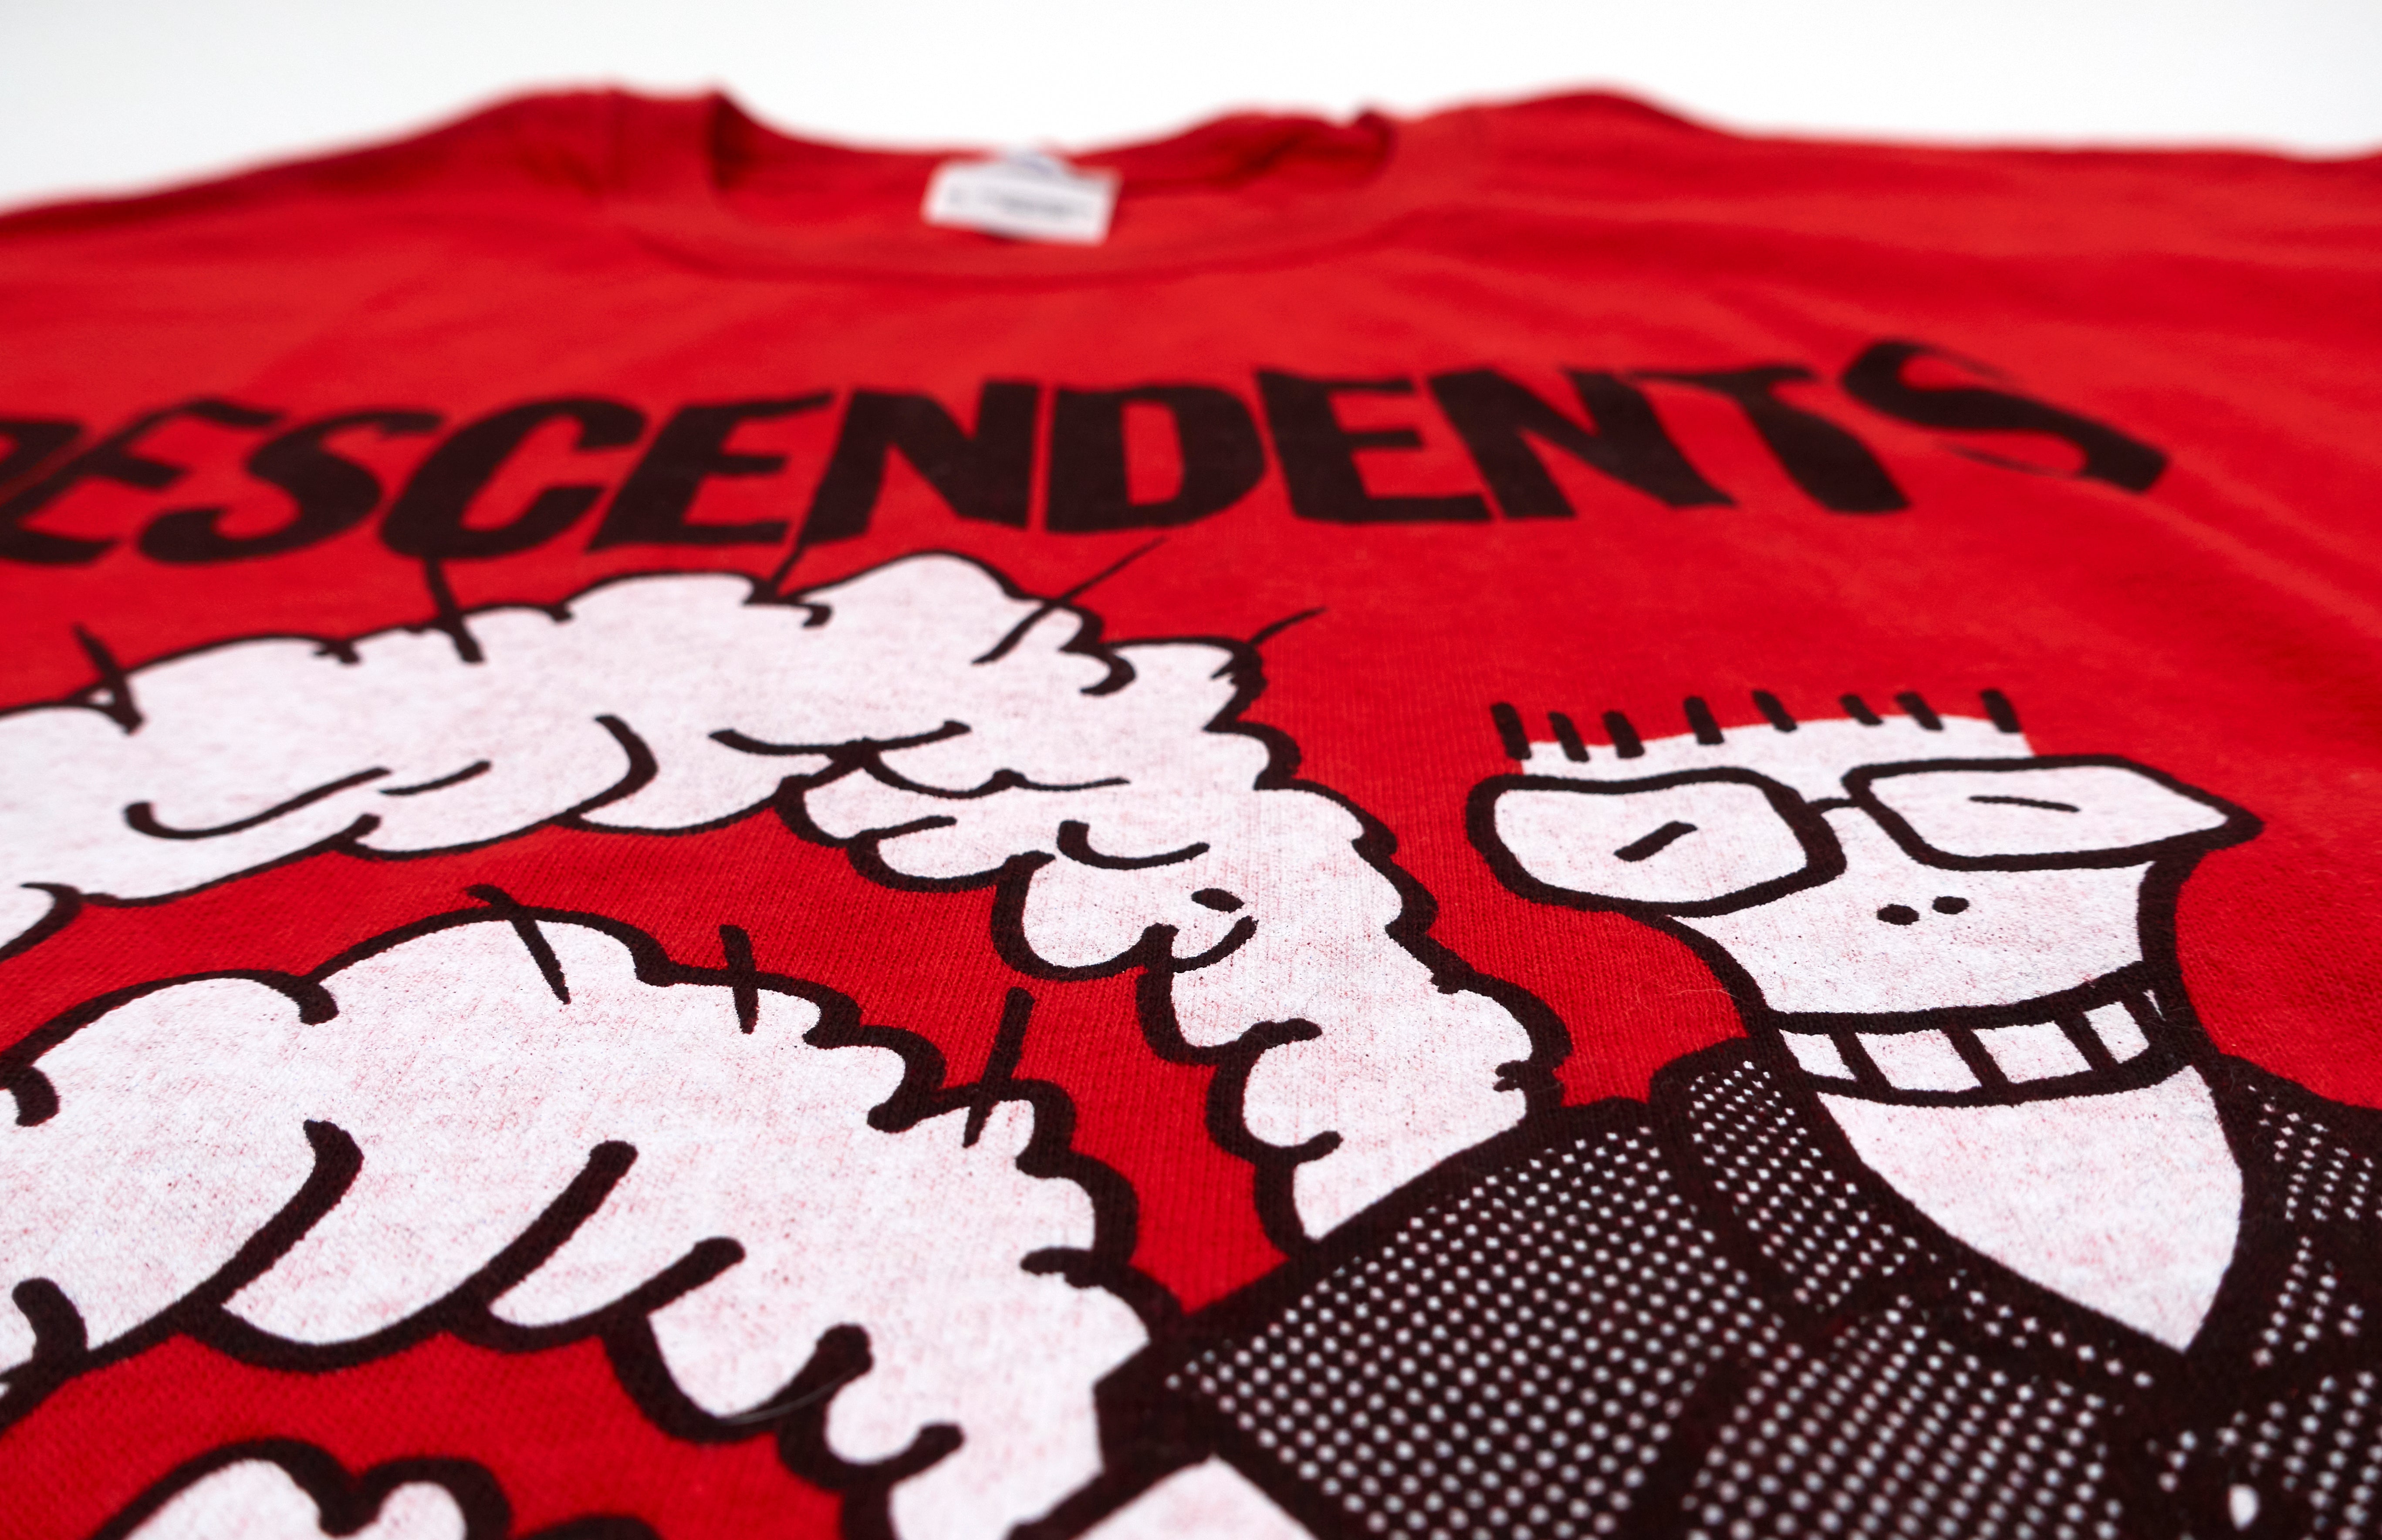 Descendents - Sonic Boom Fest 2014 Tour Shirt Size XL